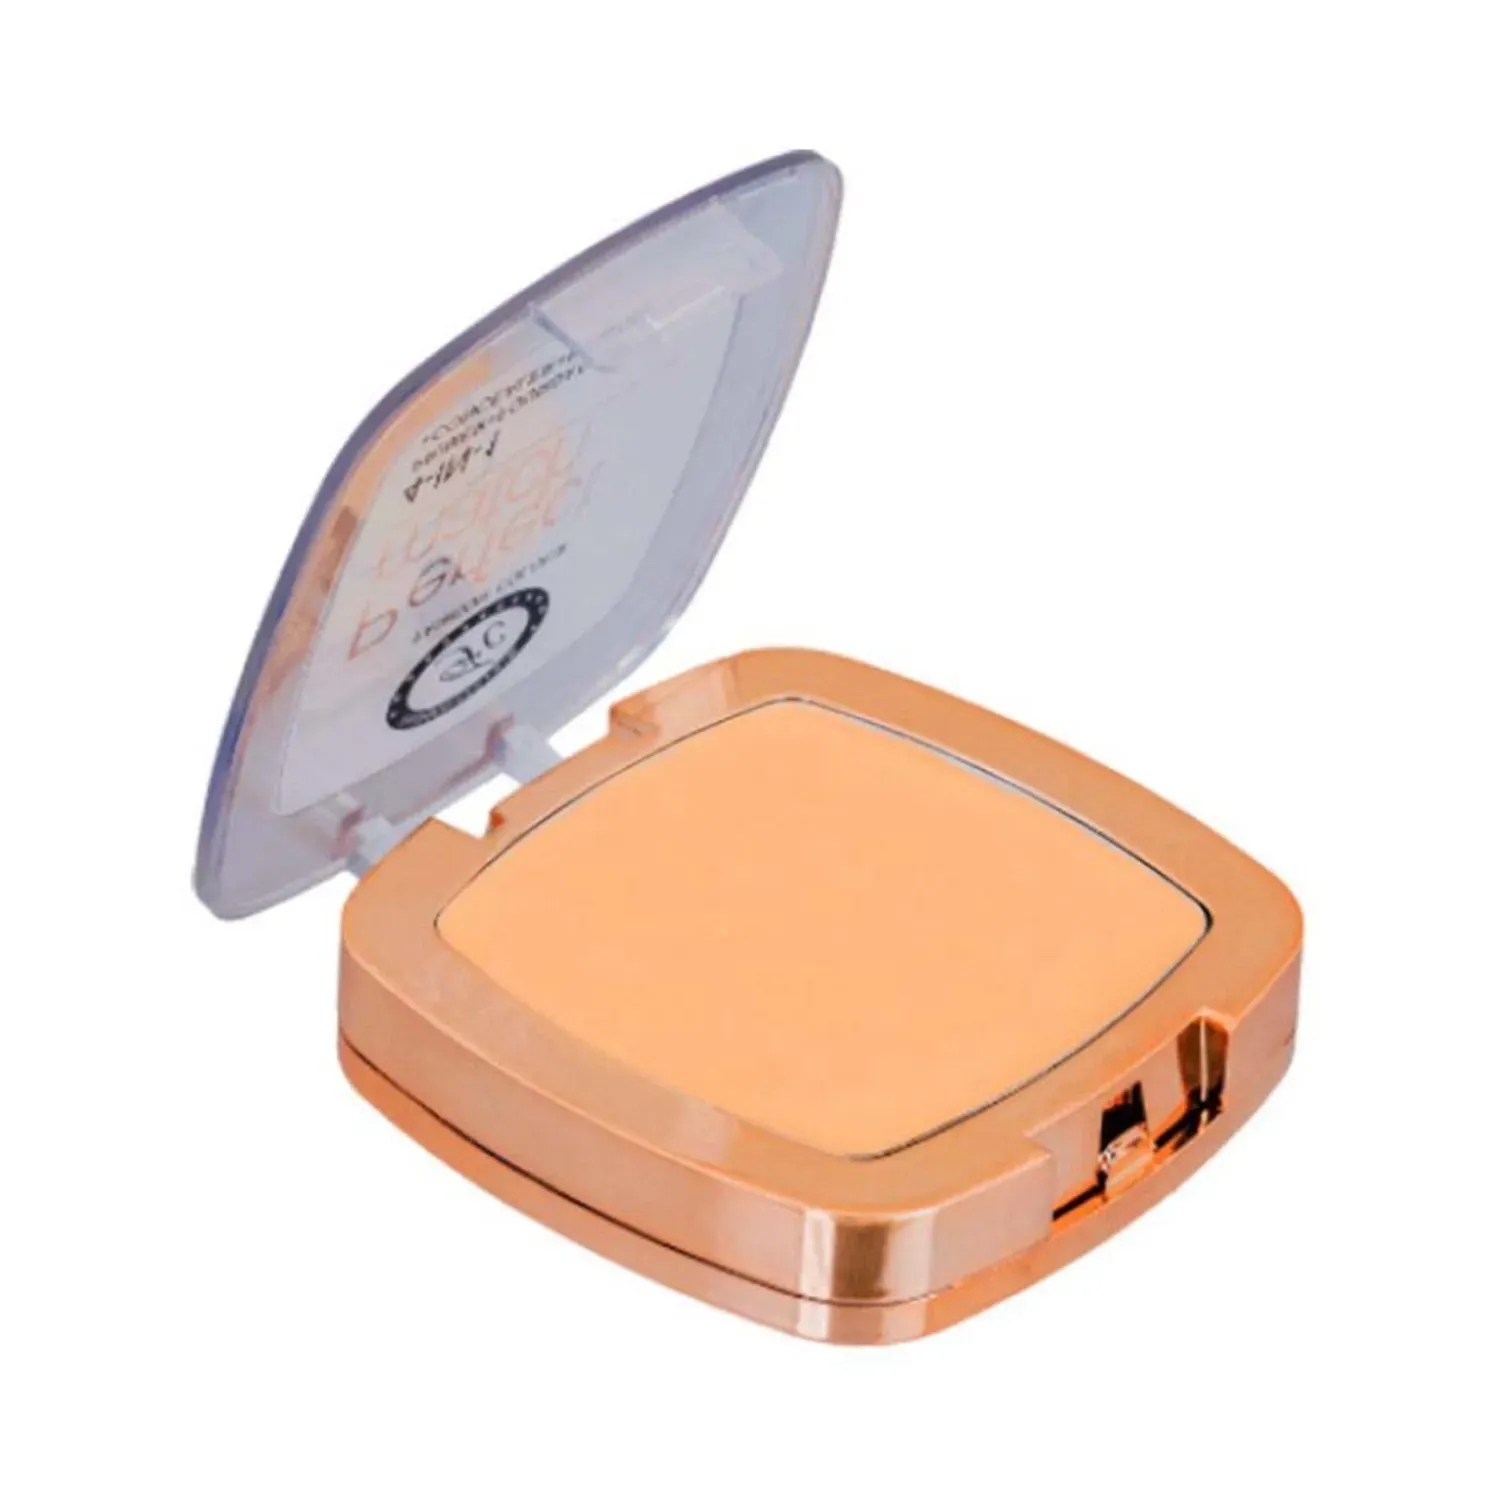 Fashion Colour | Fashion Colour 4-In-1 Perfect Match Compact Powder - 03 Shade (7g)